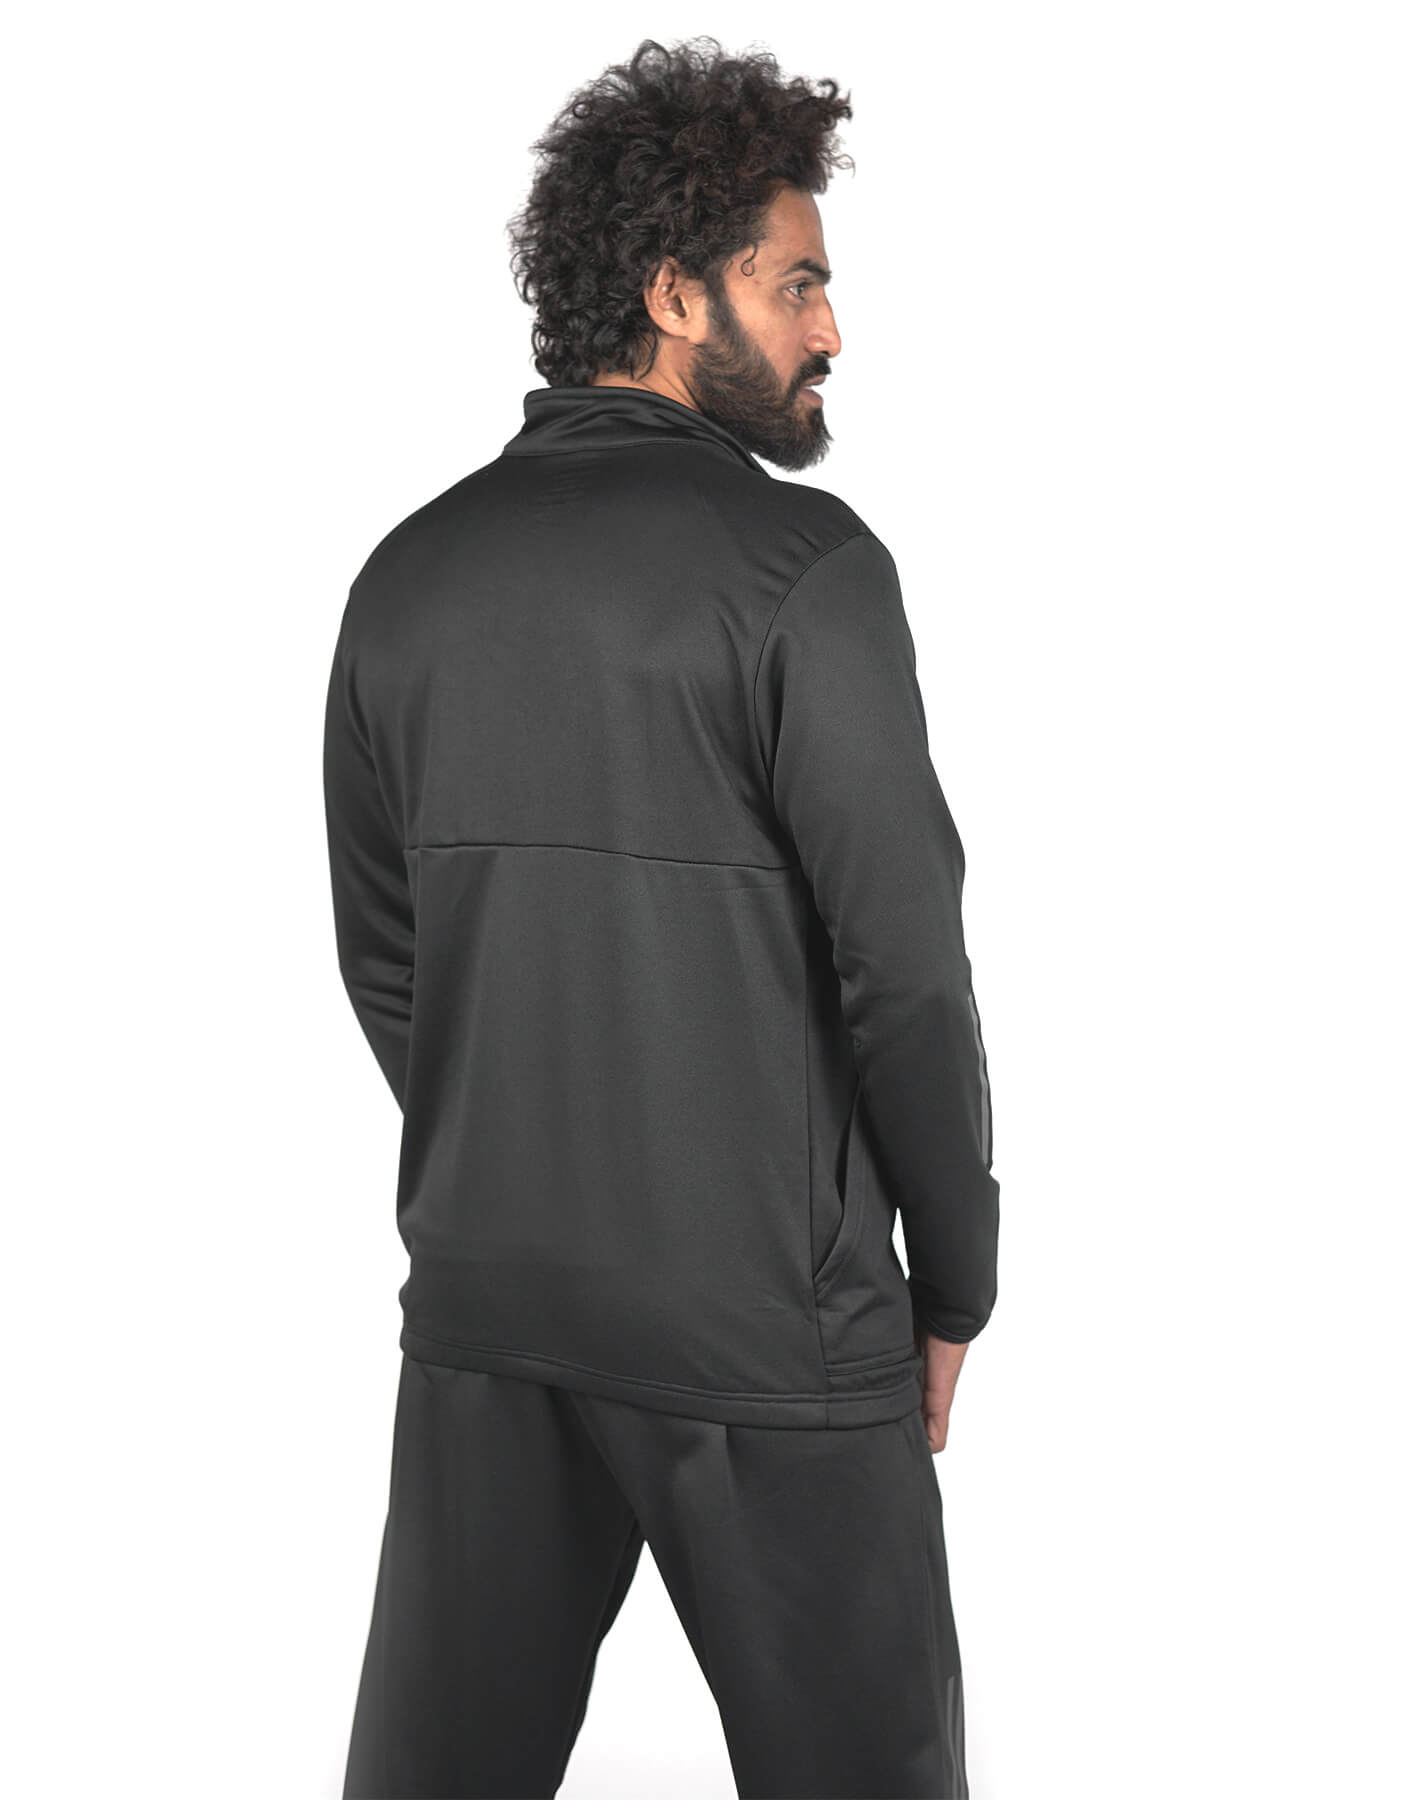 365 Track Jacket 2.0 - Black-Bodybrics-Jacket,Track